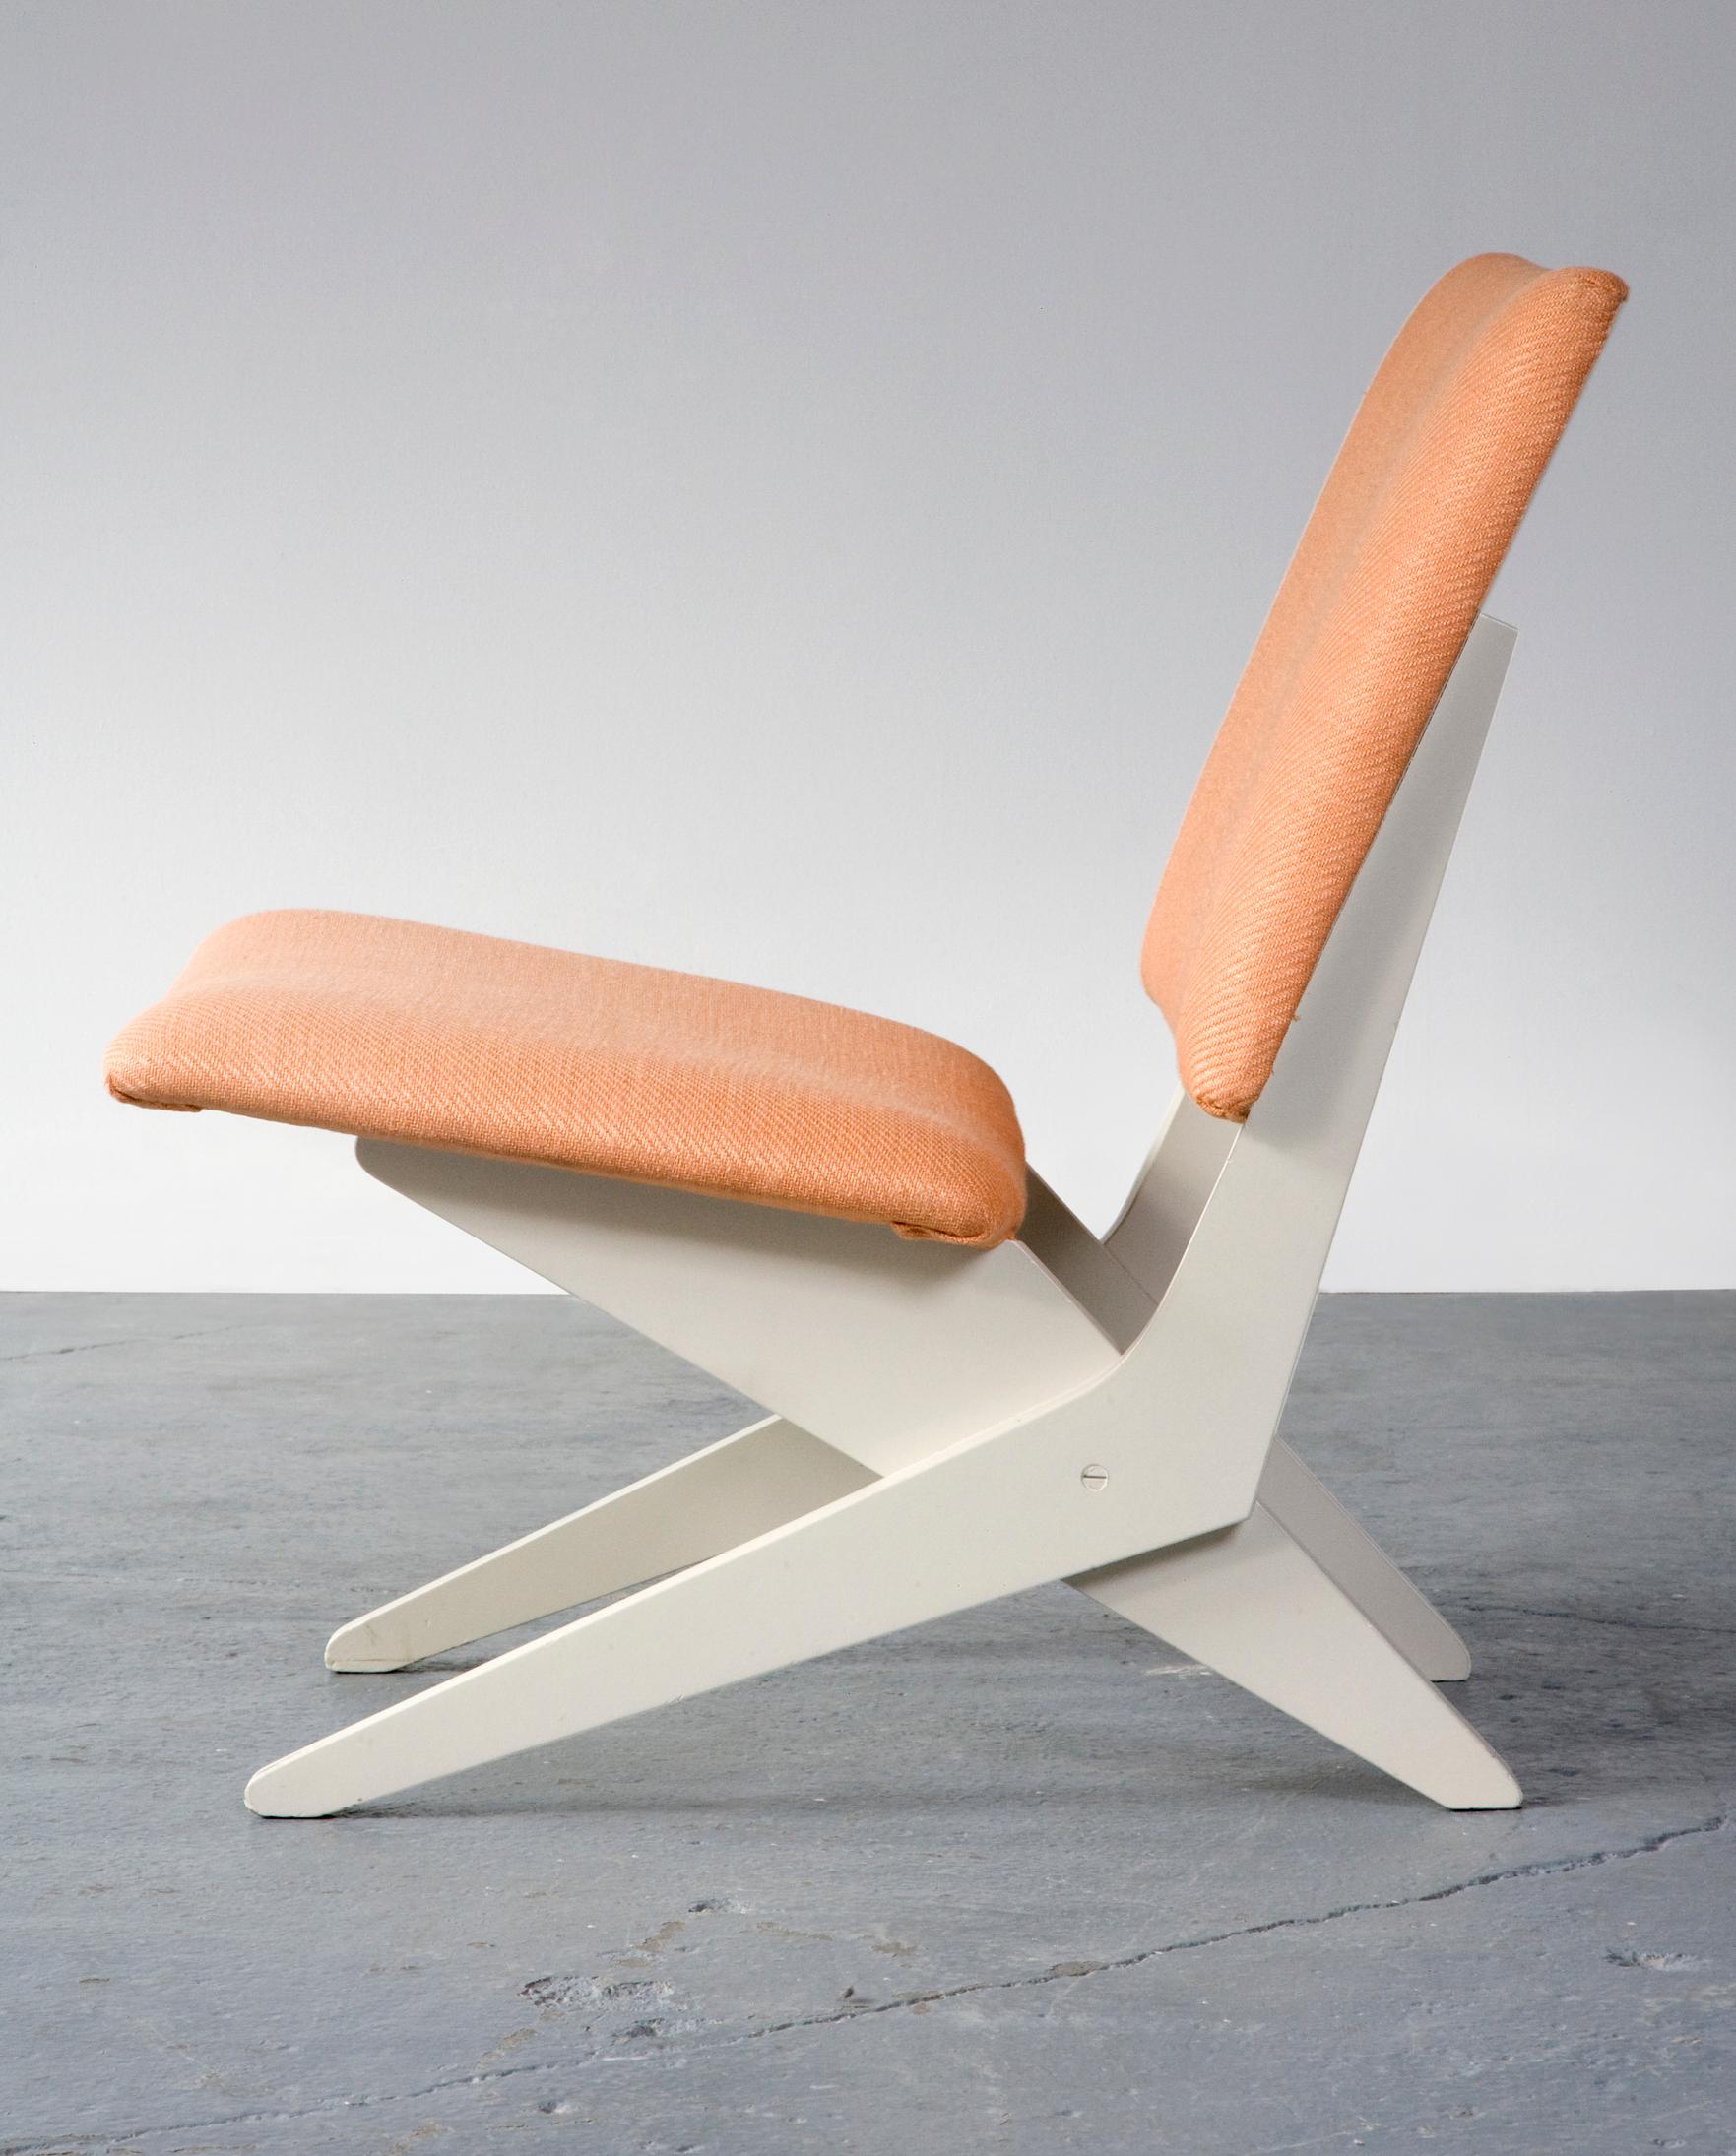 European Upholstered Chair on Sculptural Plywood Bae by Peter van Grunsven, 1958